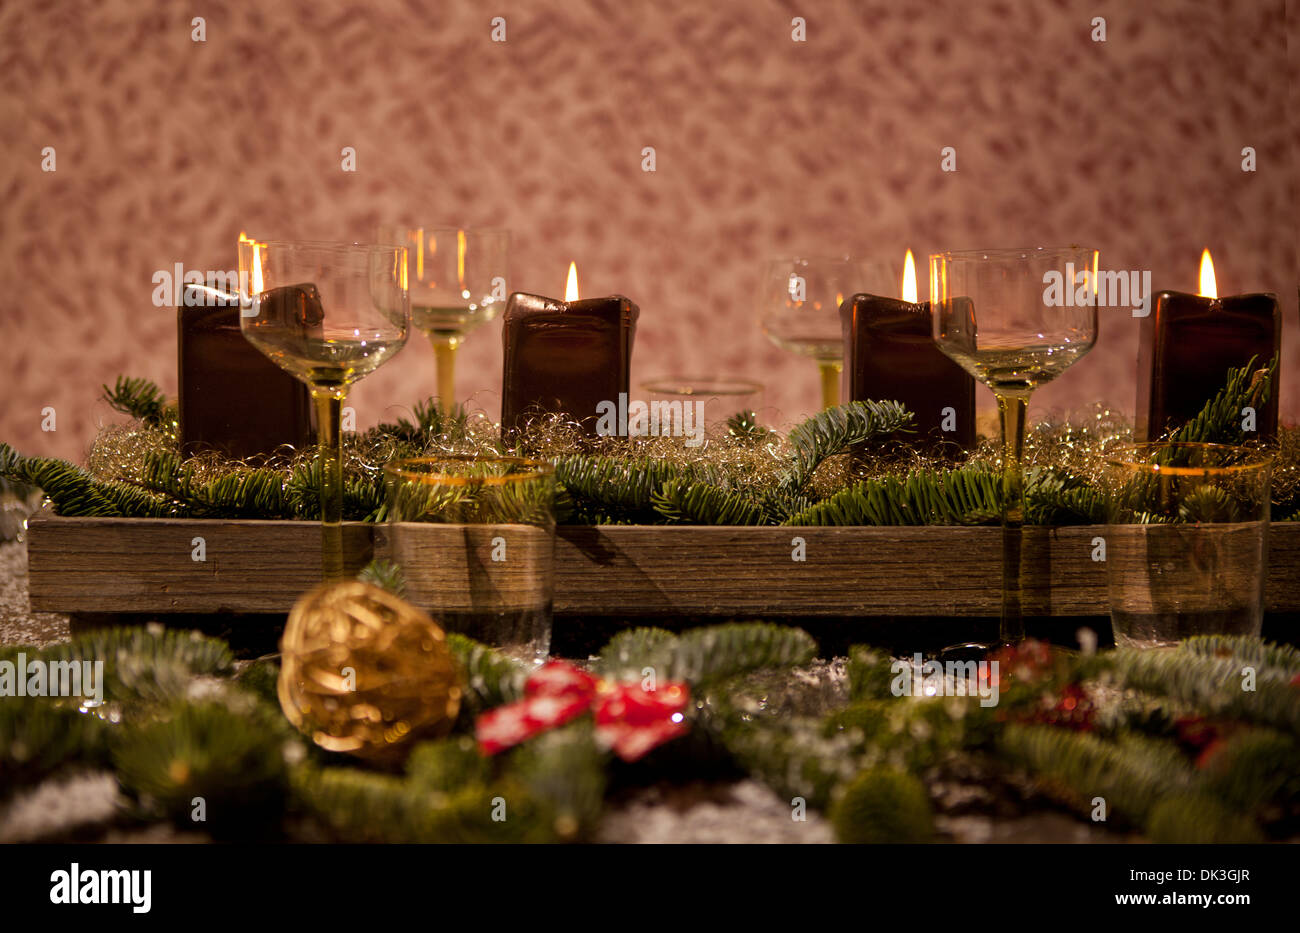 Lieu de Noël avec des bougies, sont des verres à vin sur la table, des branches d'arbre de pin sont ornés de neige décoratif Banque D'Images